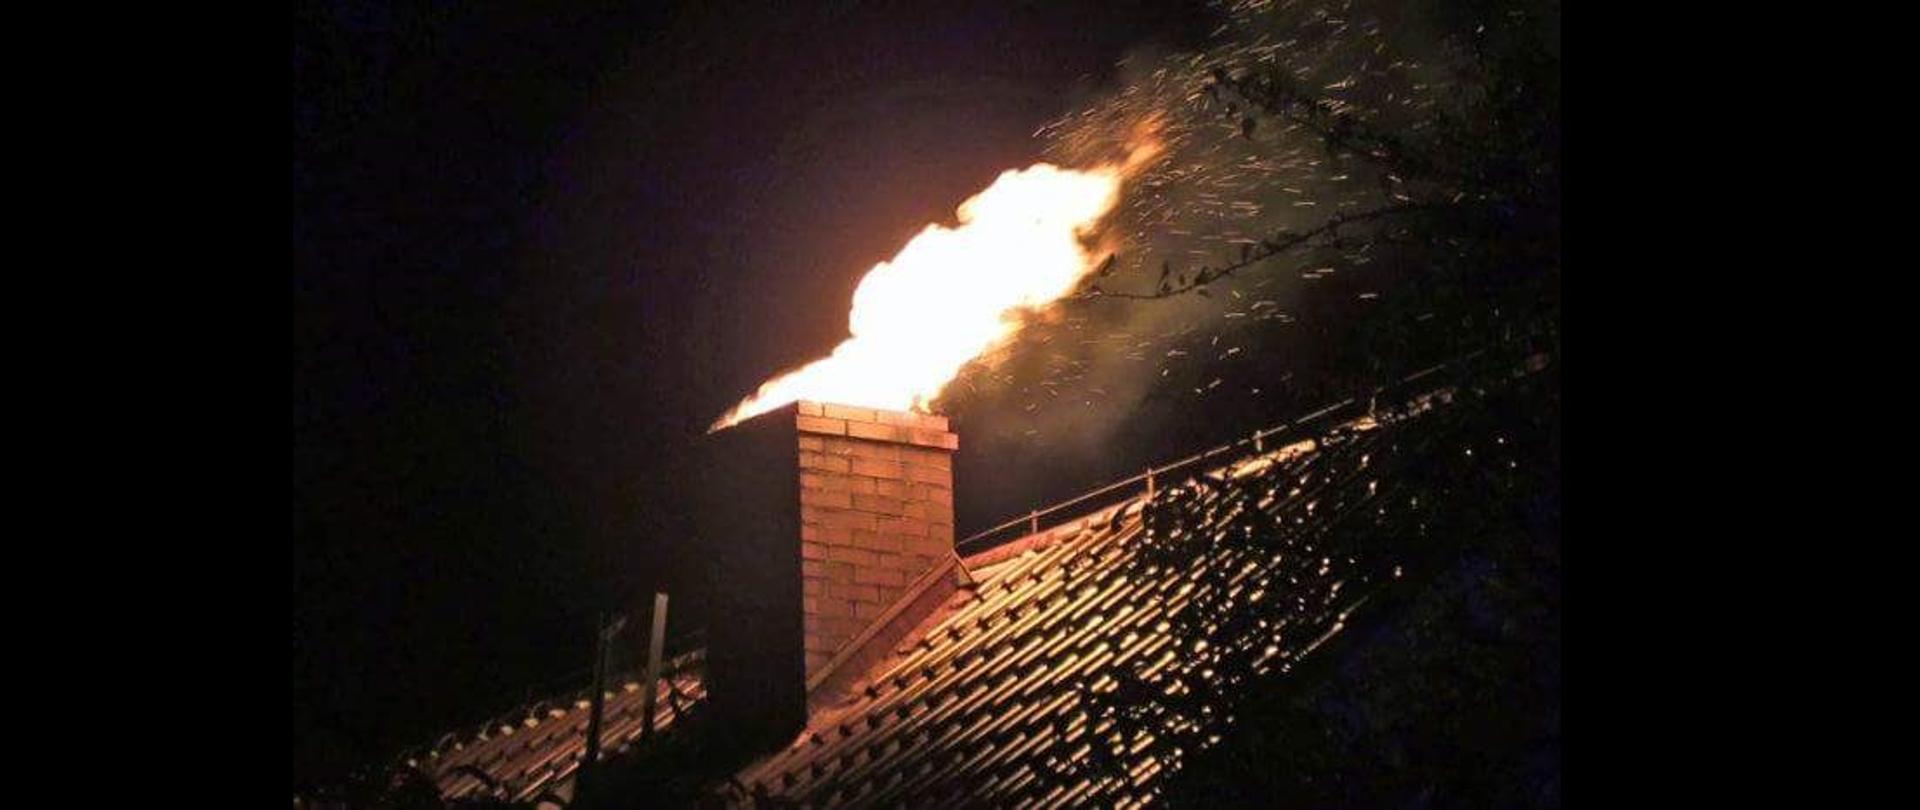 Zdjęcie przedstawia płonący komin, z którego wylatują języki ognia oraz iskry. Zdjęcie wykomane nocą.